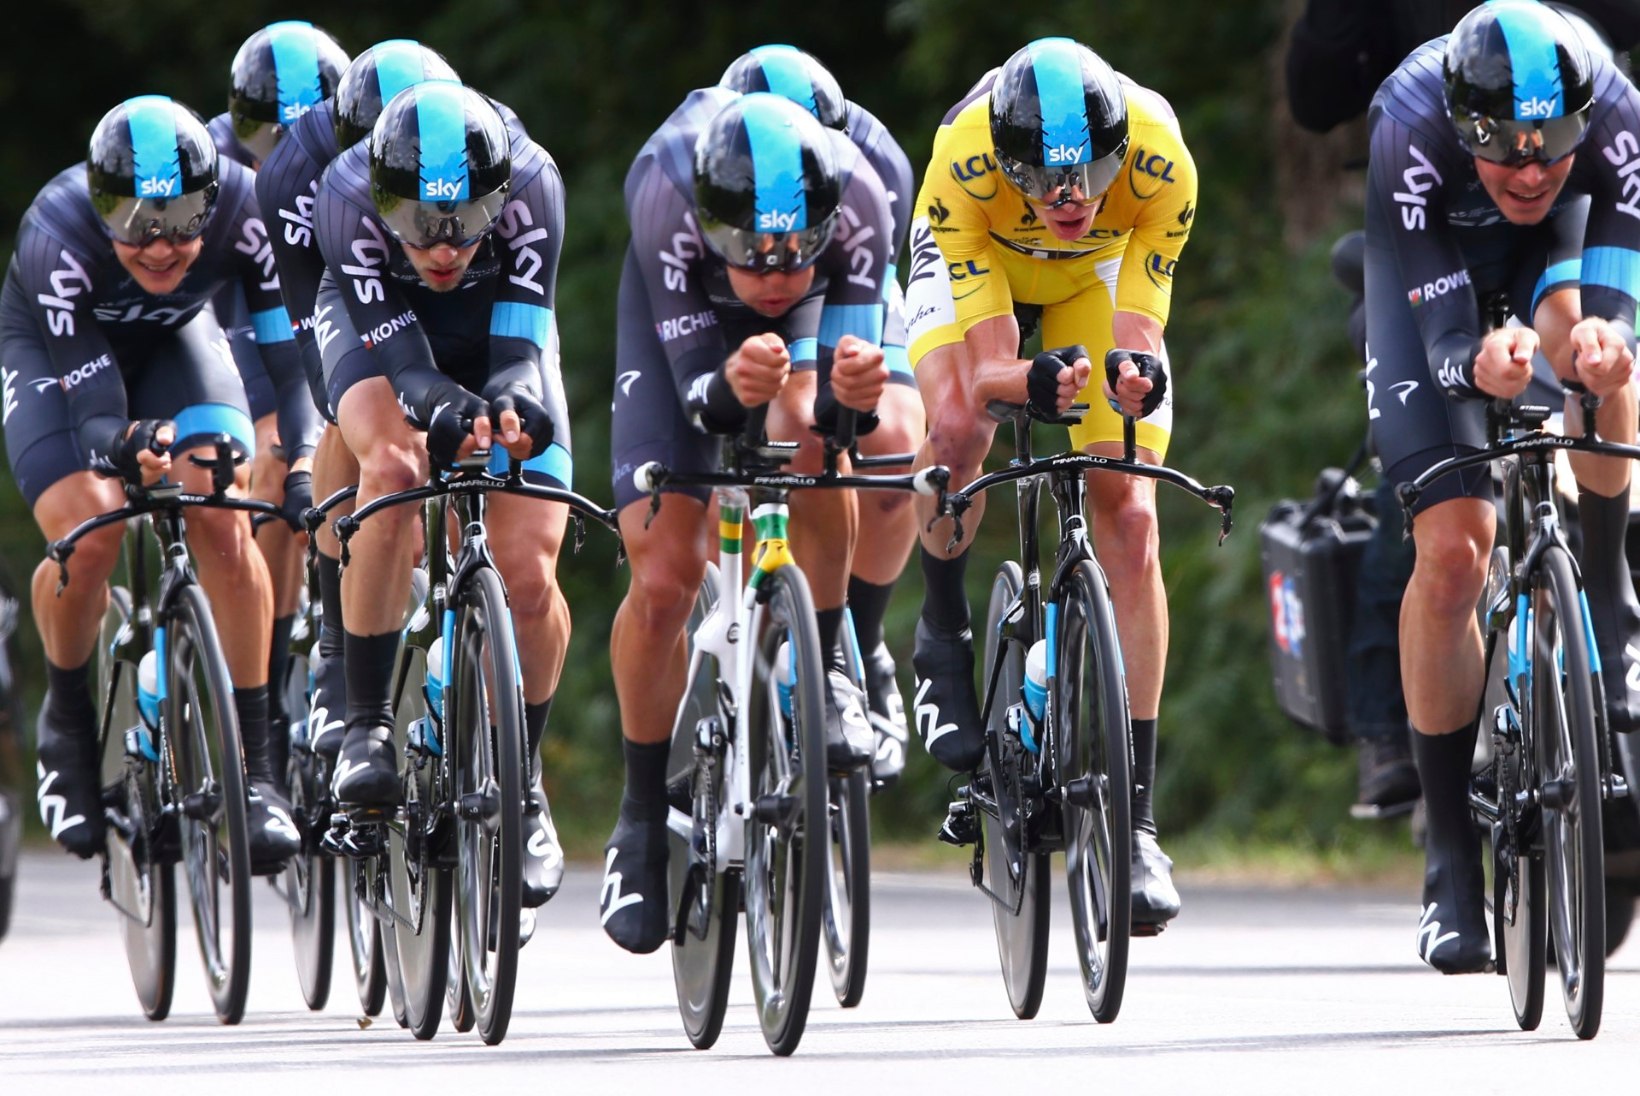 Tour de France'i üldliider Froome: Nibali suur kaotus üllatab